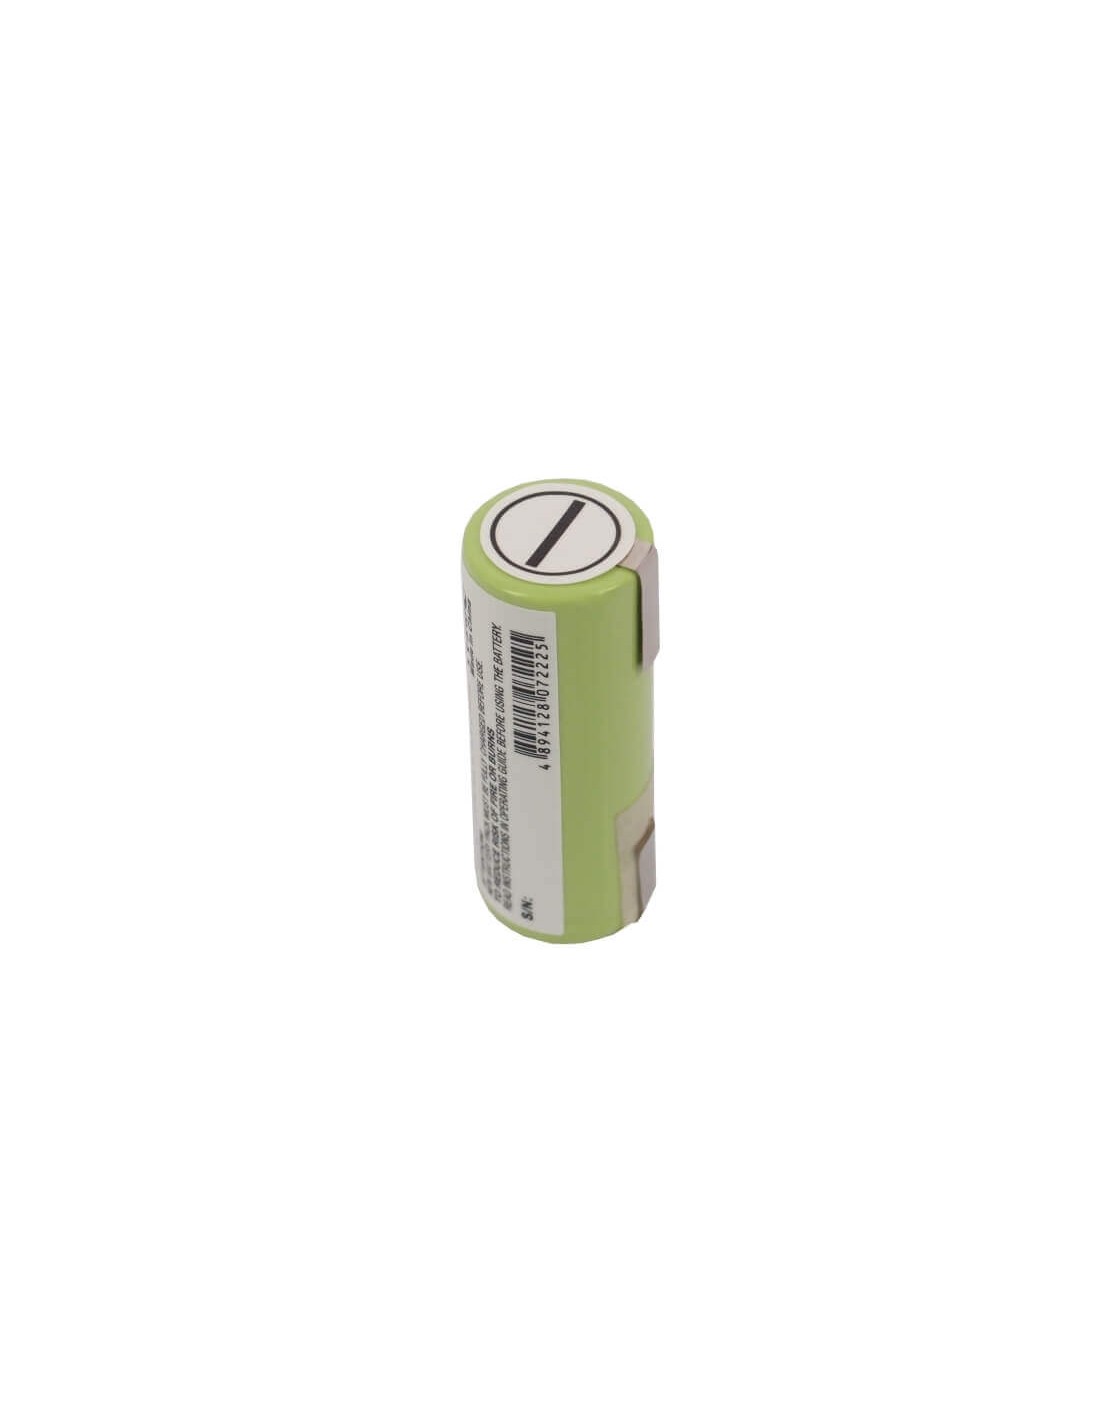 Battery for Braun 1008, 1012, 1013 1.2V, 2500mAh - 3.00Wh